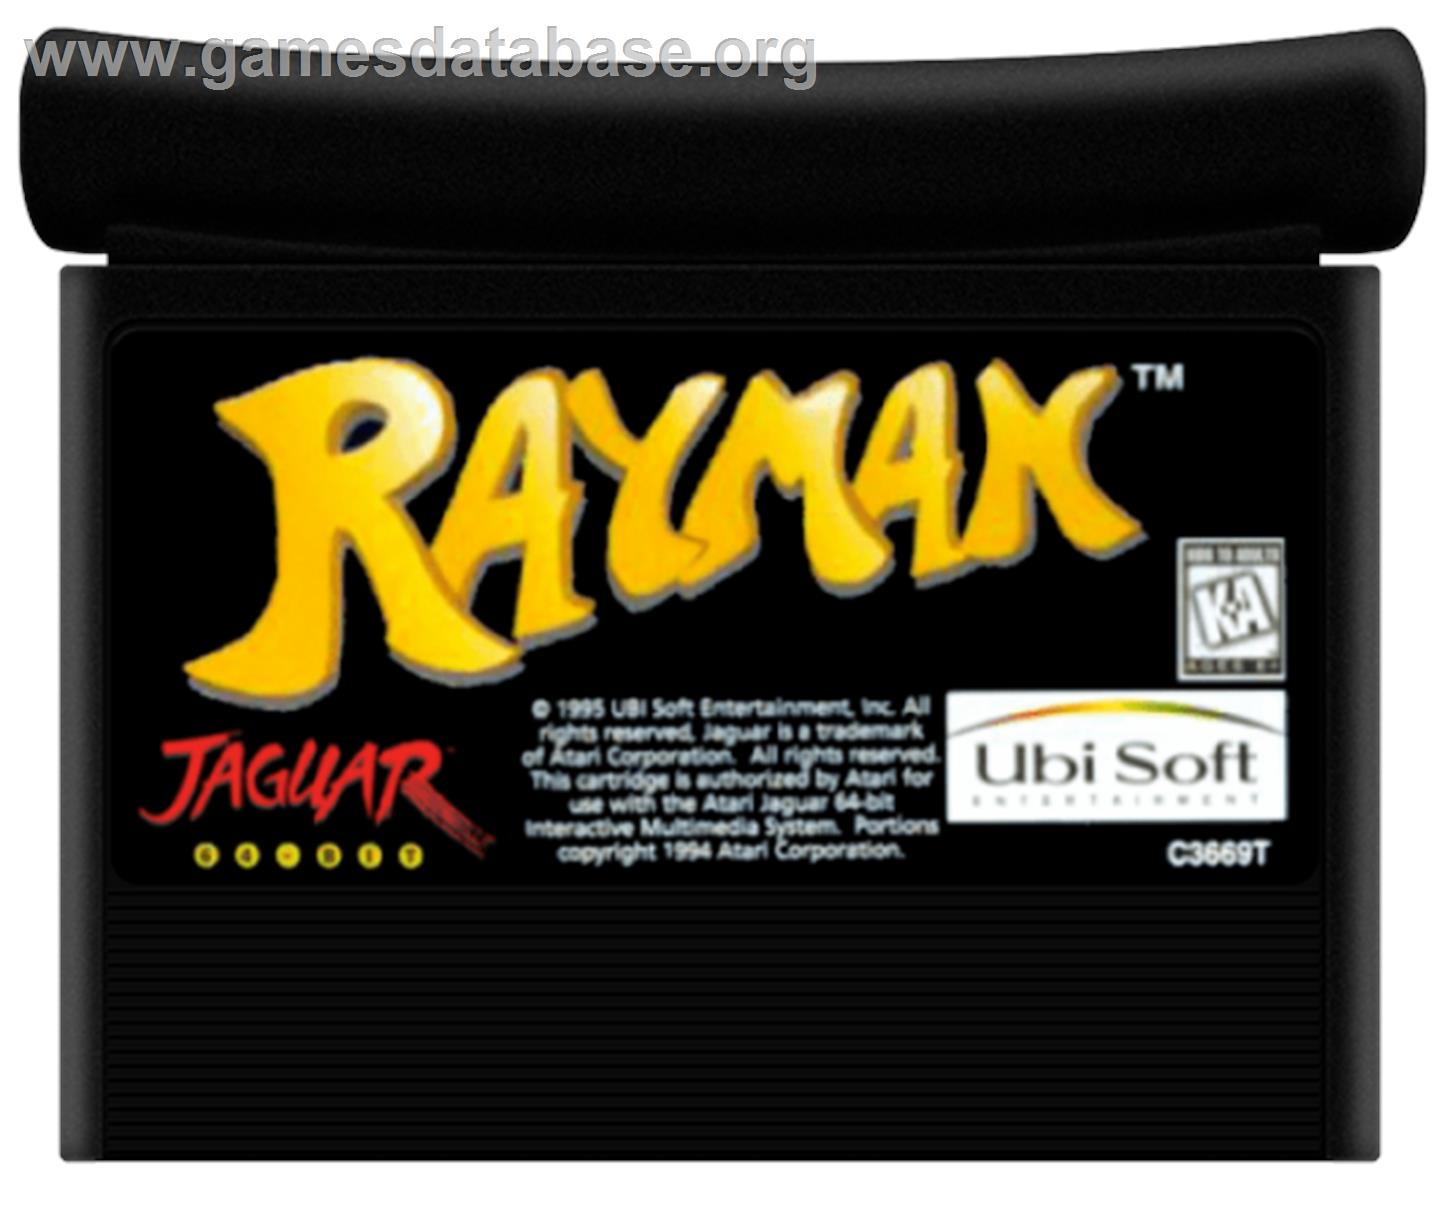 Rayman (Demo) - Atari Jaguar - Artwork - Cartridge